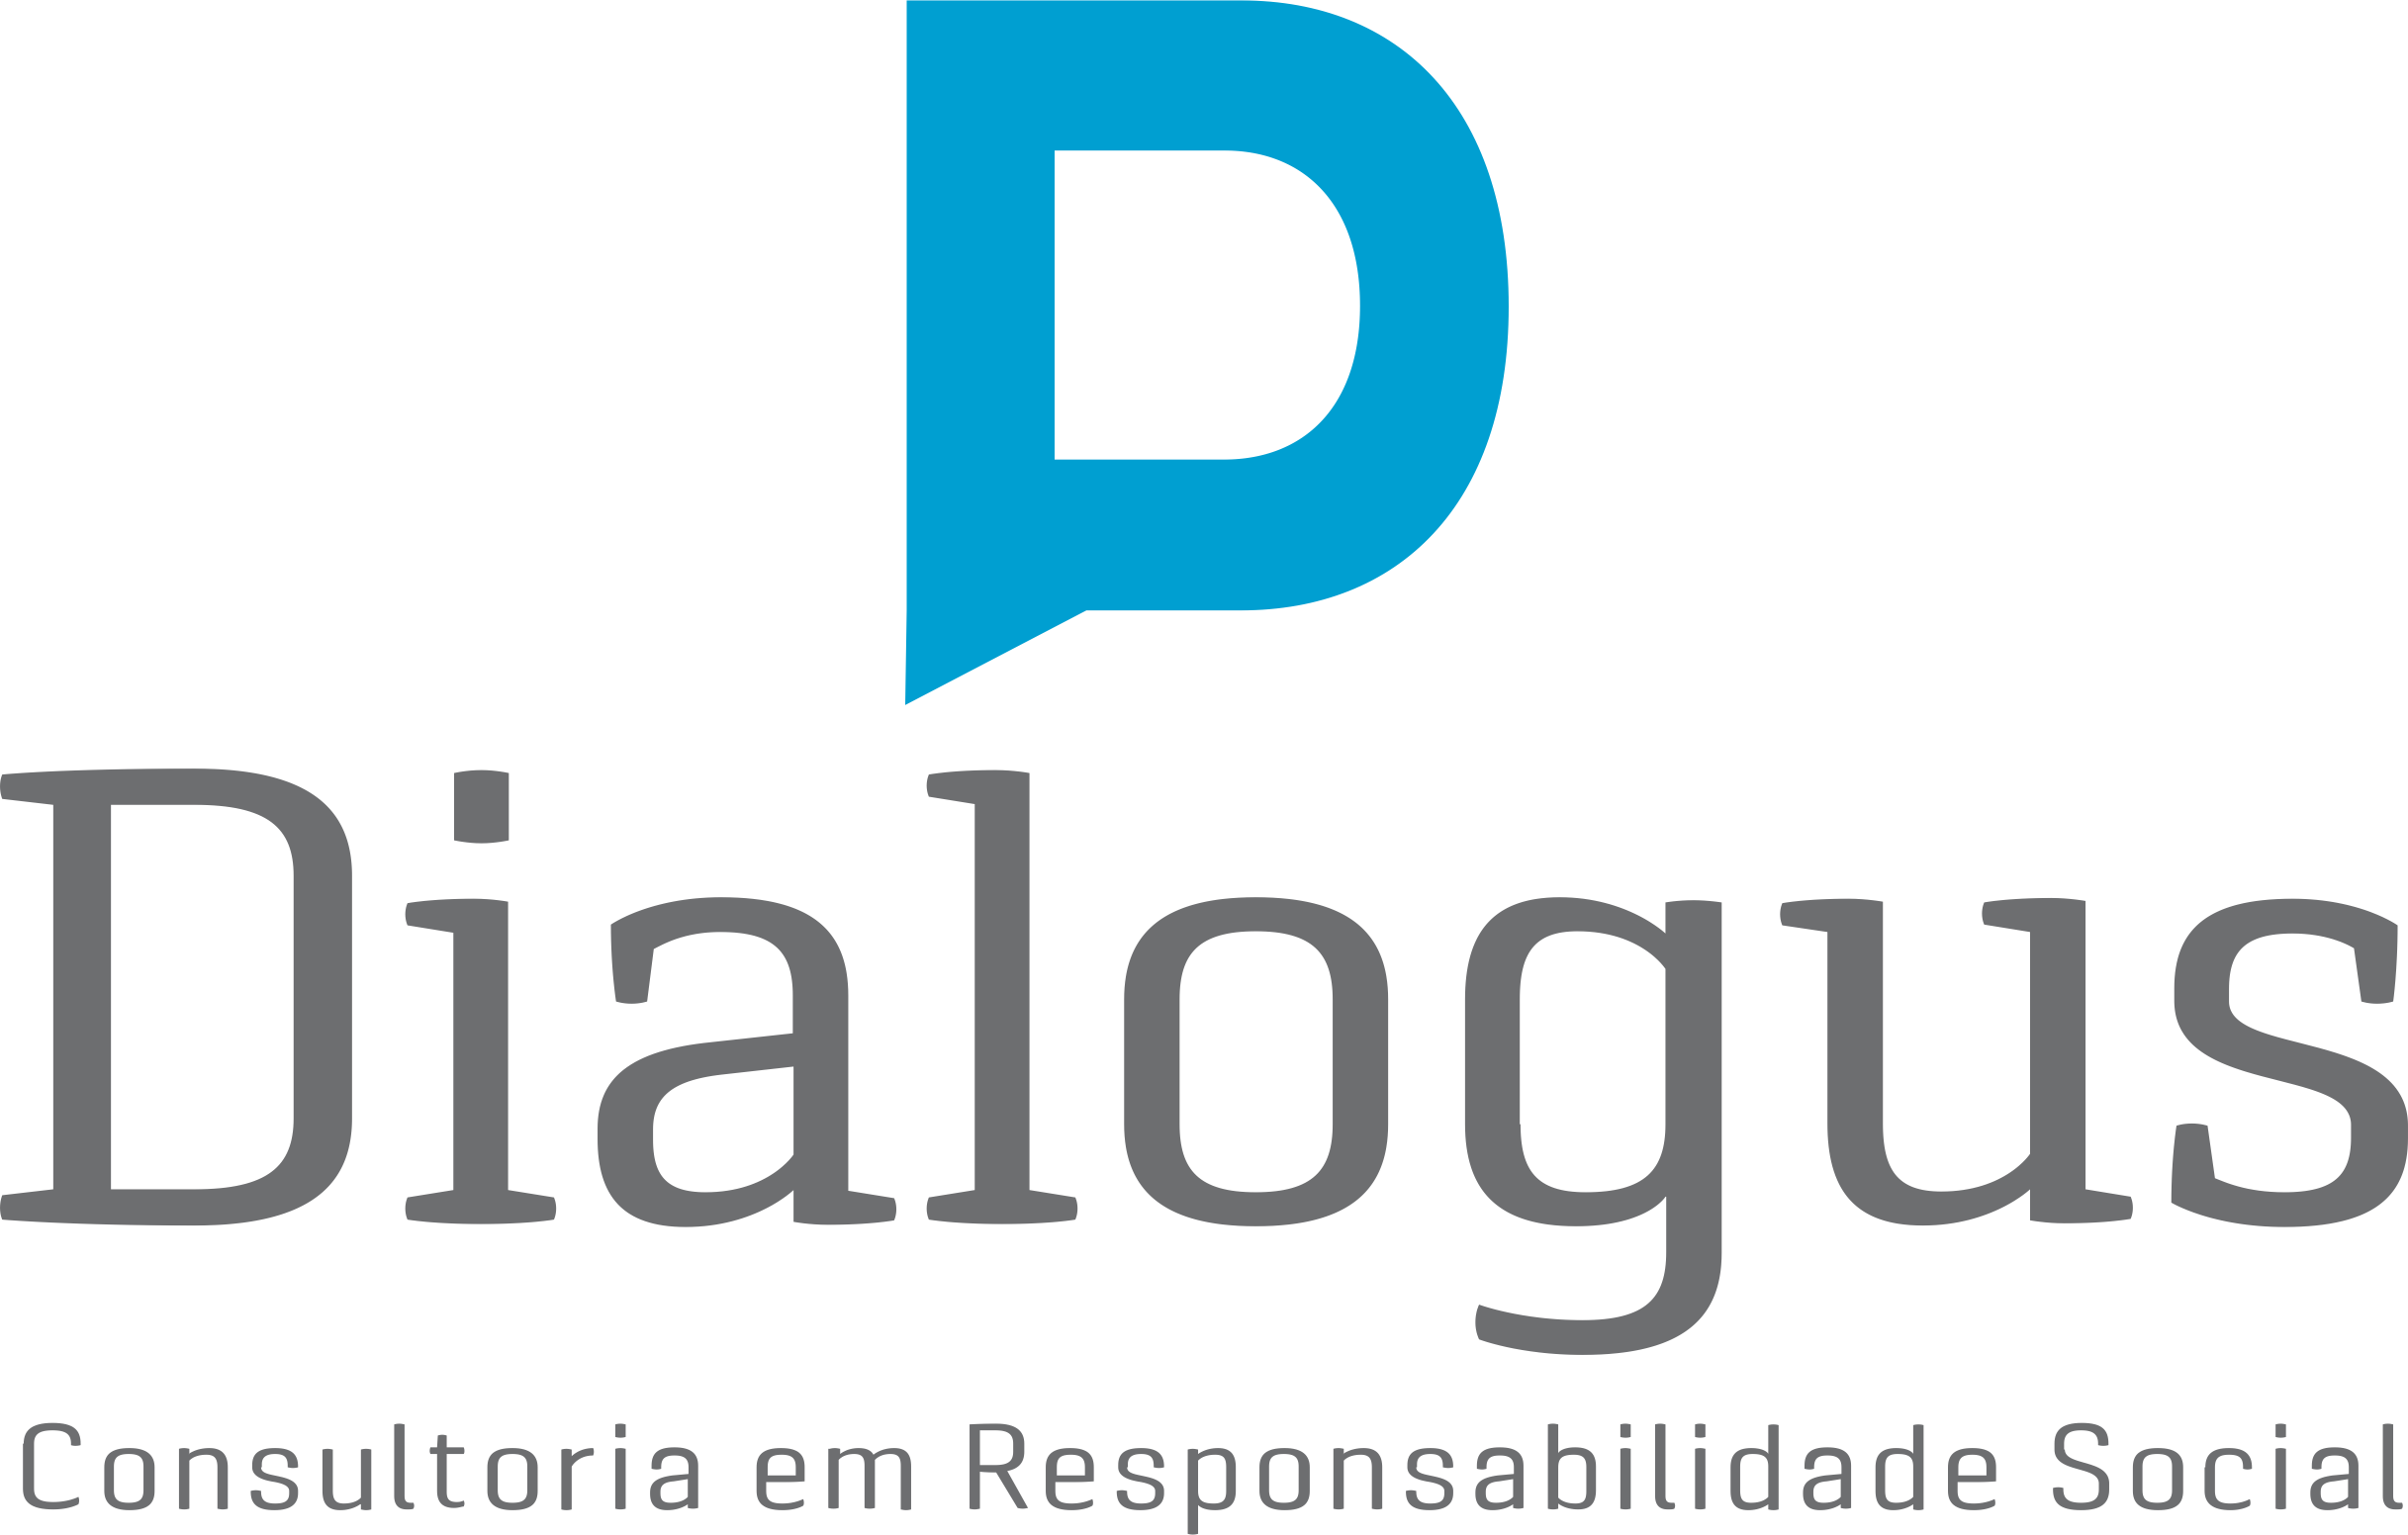 Dialogus Responsabilidade Social - Consultoria - Comunicação Corporativa - Fortaleza/CE